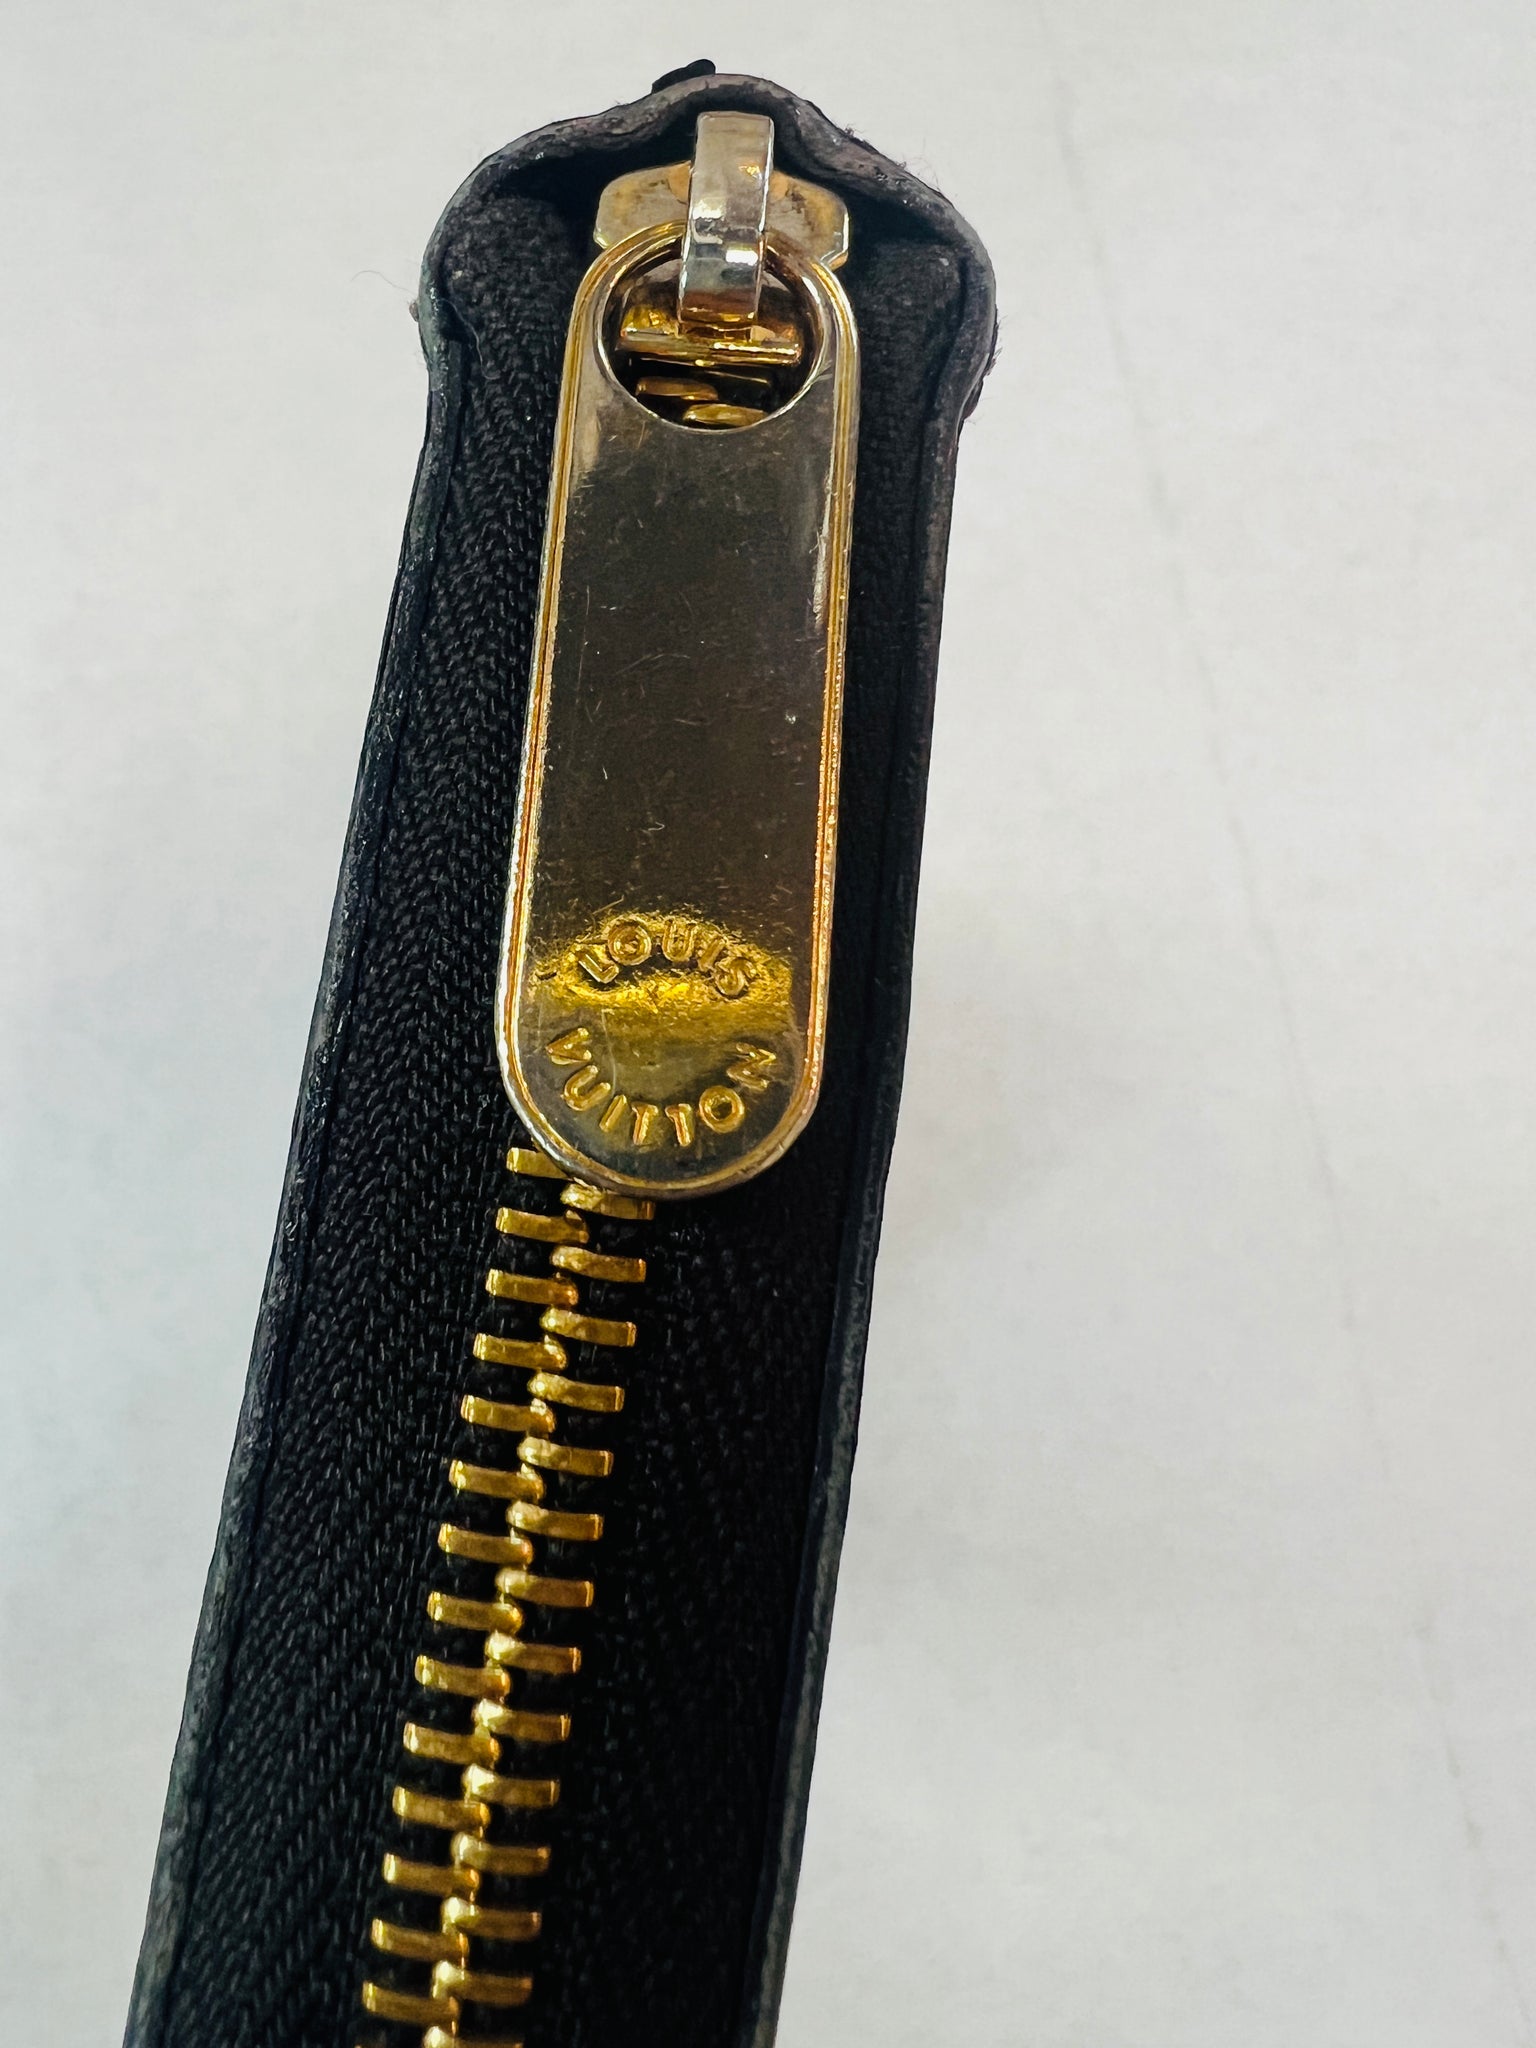 LOUIS VUITTON purse M93522 Zippy wallet Monogram Vernis Bordeaux Borde –